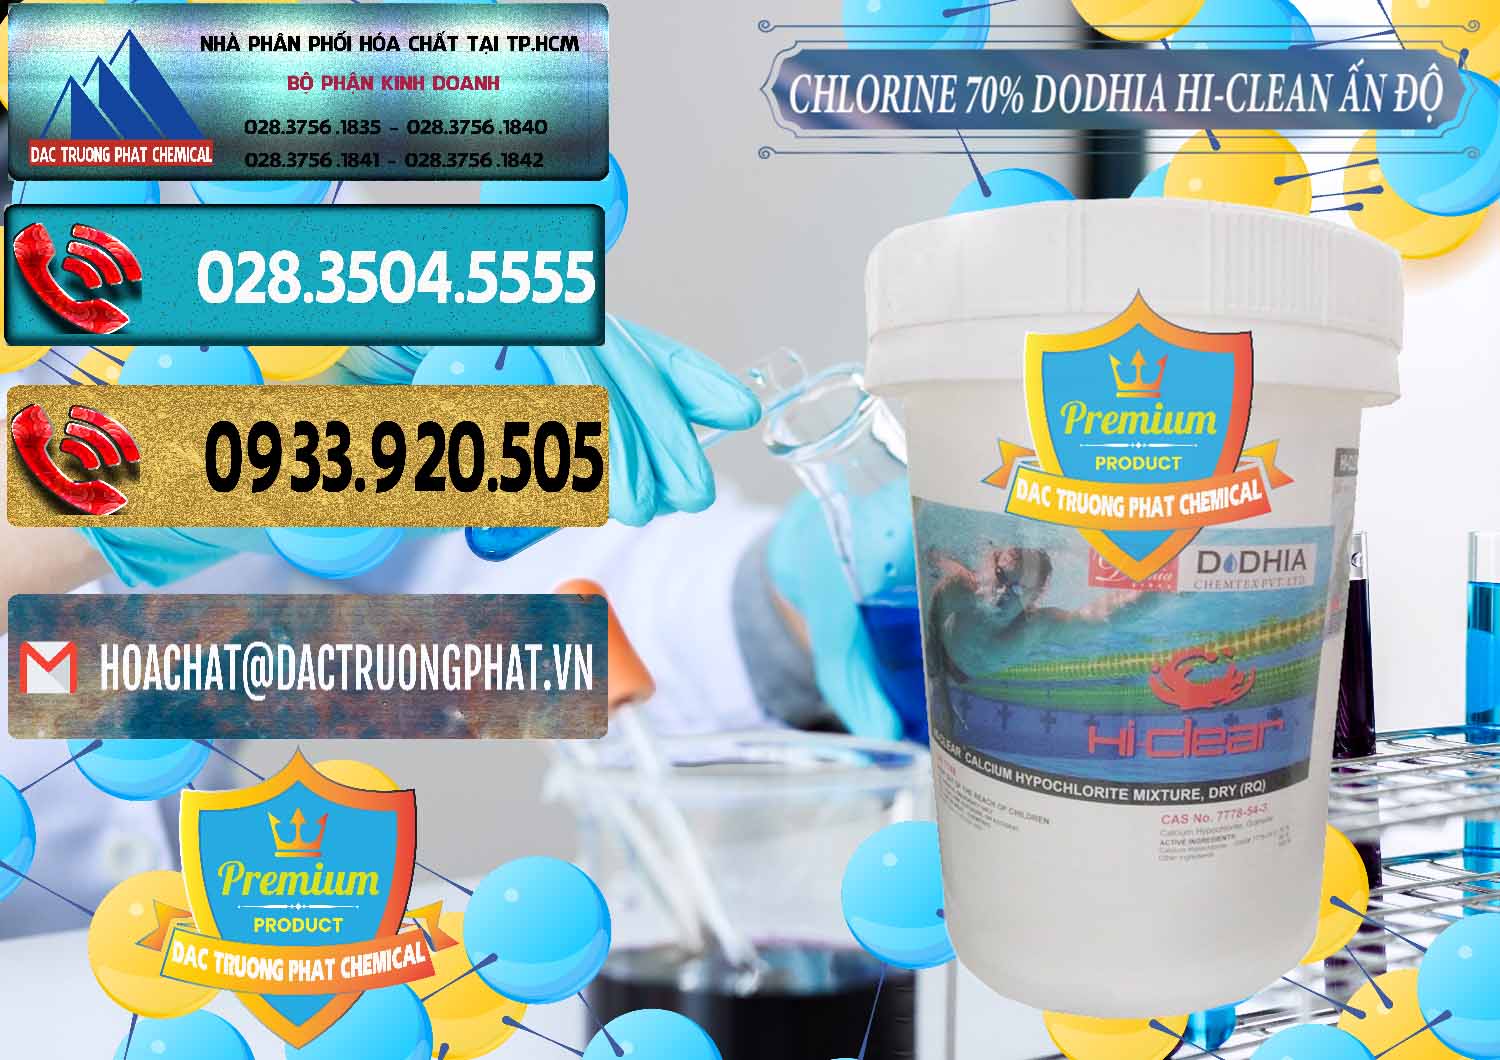 Công ty bán _ cung ứng Chlorine – Clorin 70% Dodhia Hi-Clean Ấn Độ India - 0214 - Cty cung cấp _ kinh doanh hóa chất tại TP.HCM - hoachatdetnhuom.com